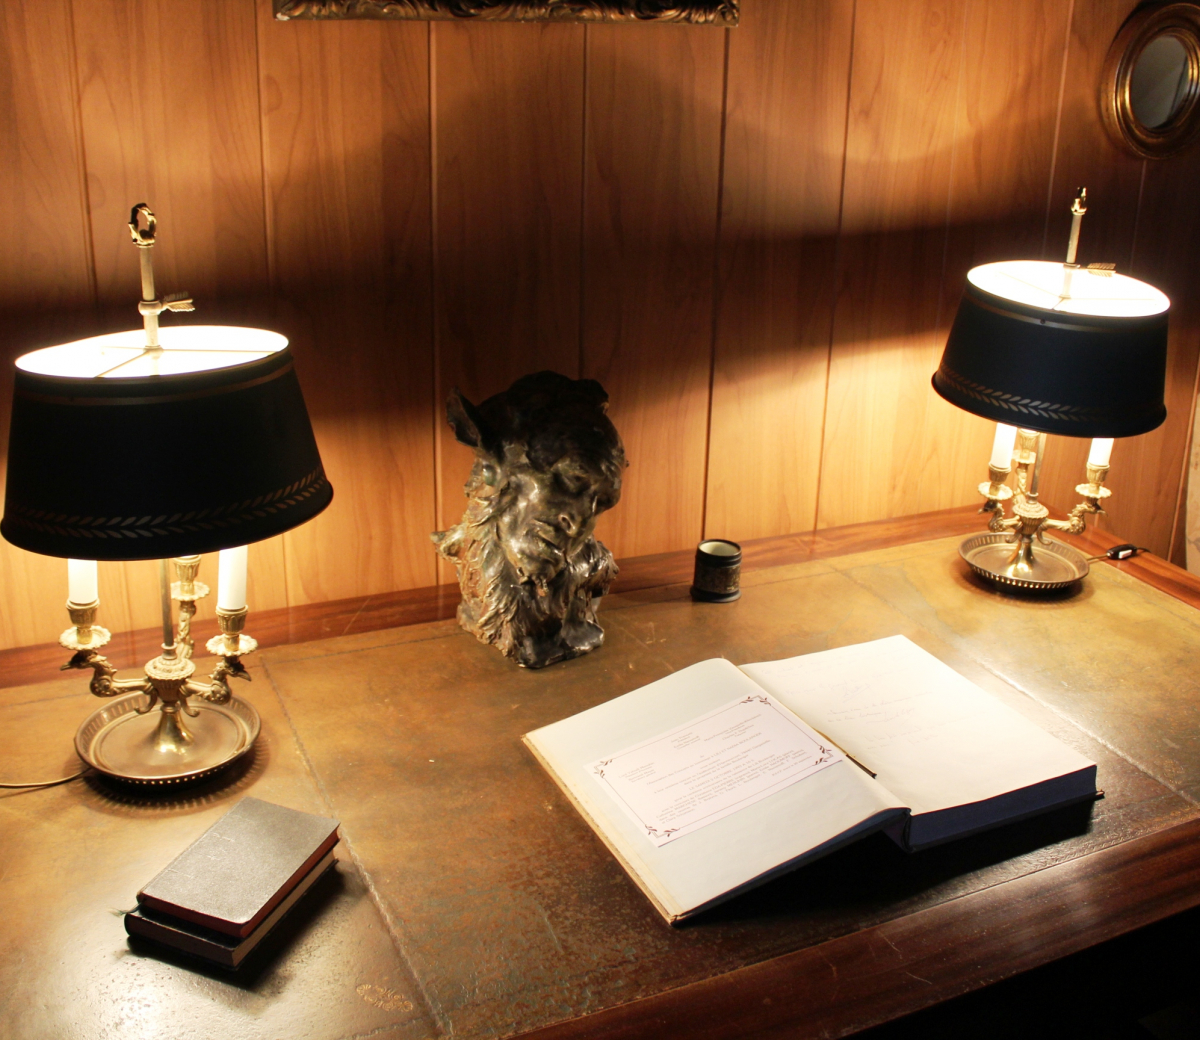 Bureau avec lampes allumées et livret ouvert